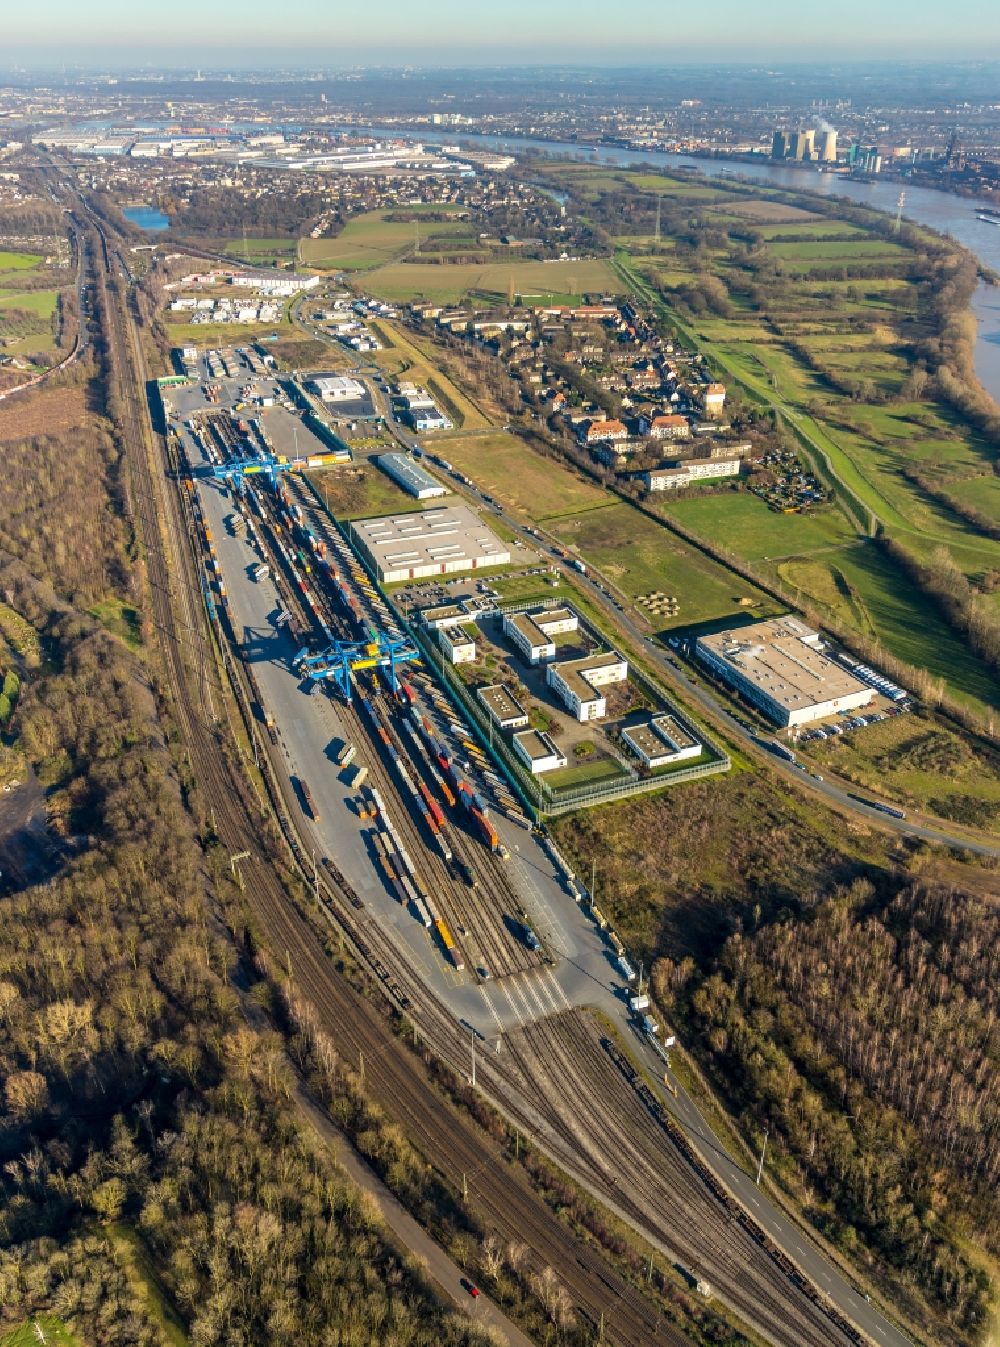 Luftbild Duisburg - Container- Terminal Samskip Multimodal Rail Terminal in Duisburg im Bundesland Nordrhein-Westfalen, Deutschland